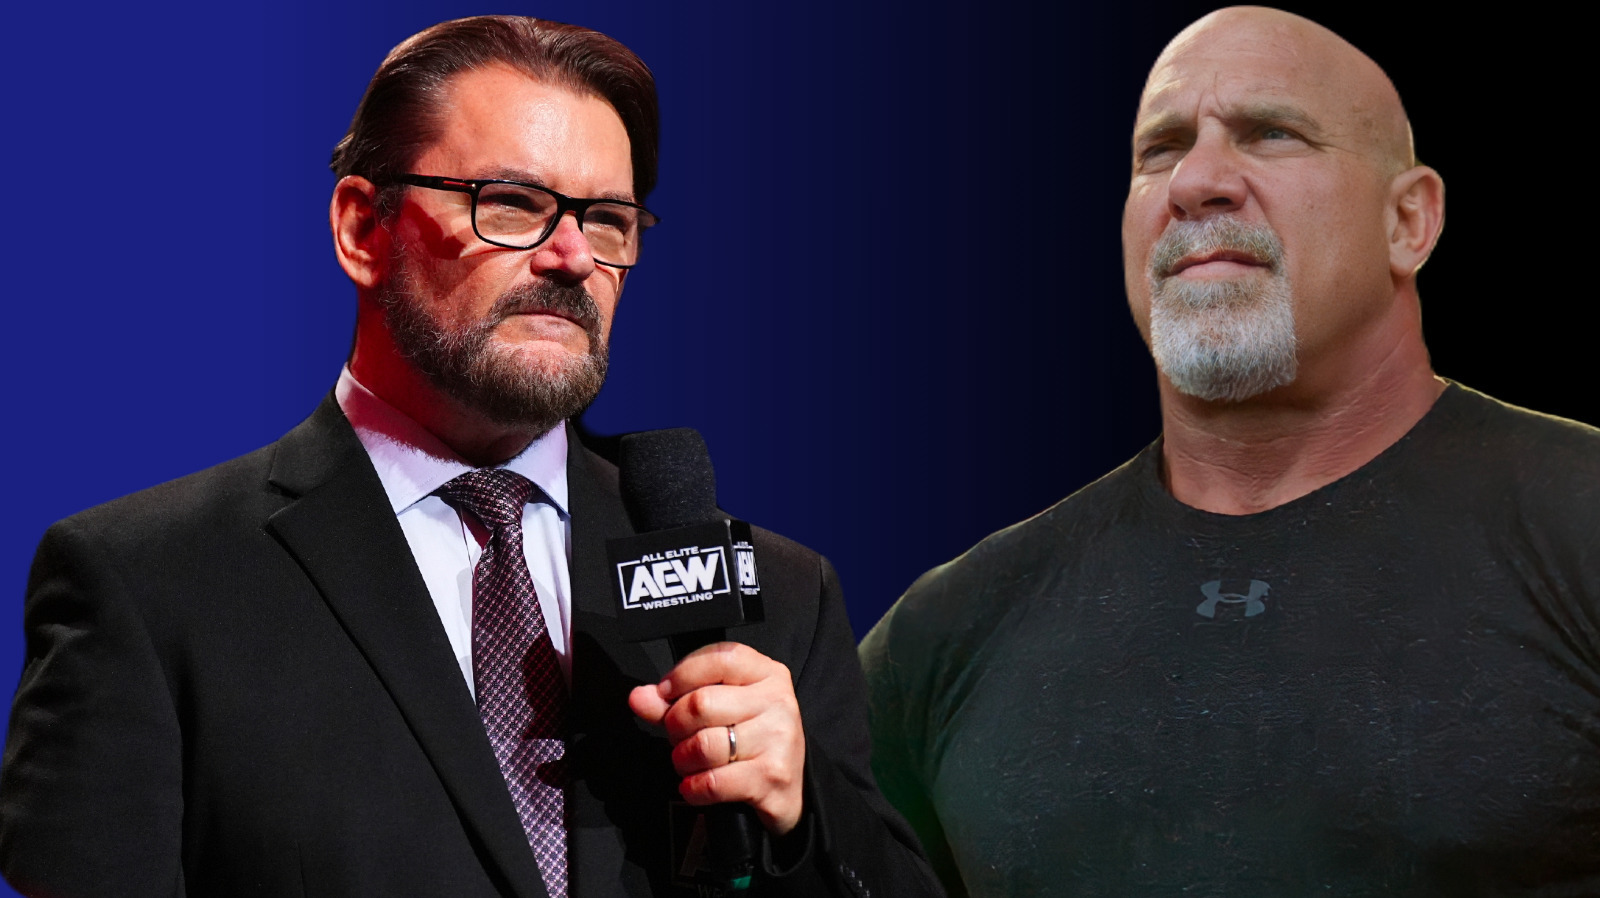 La industria de la lucha libre no recreará el fenómeno Goldberg de WCW